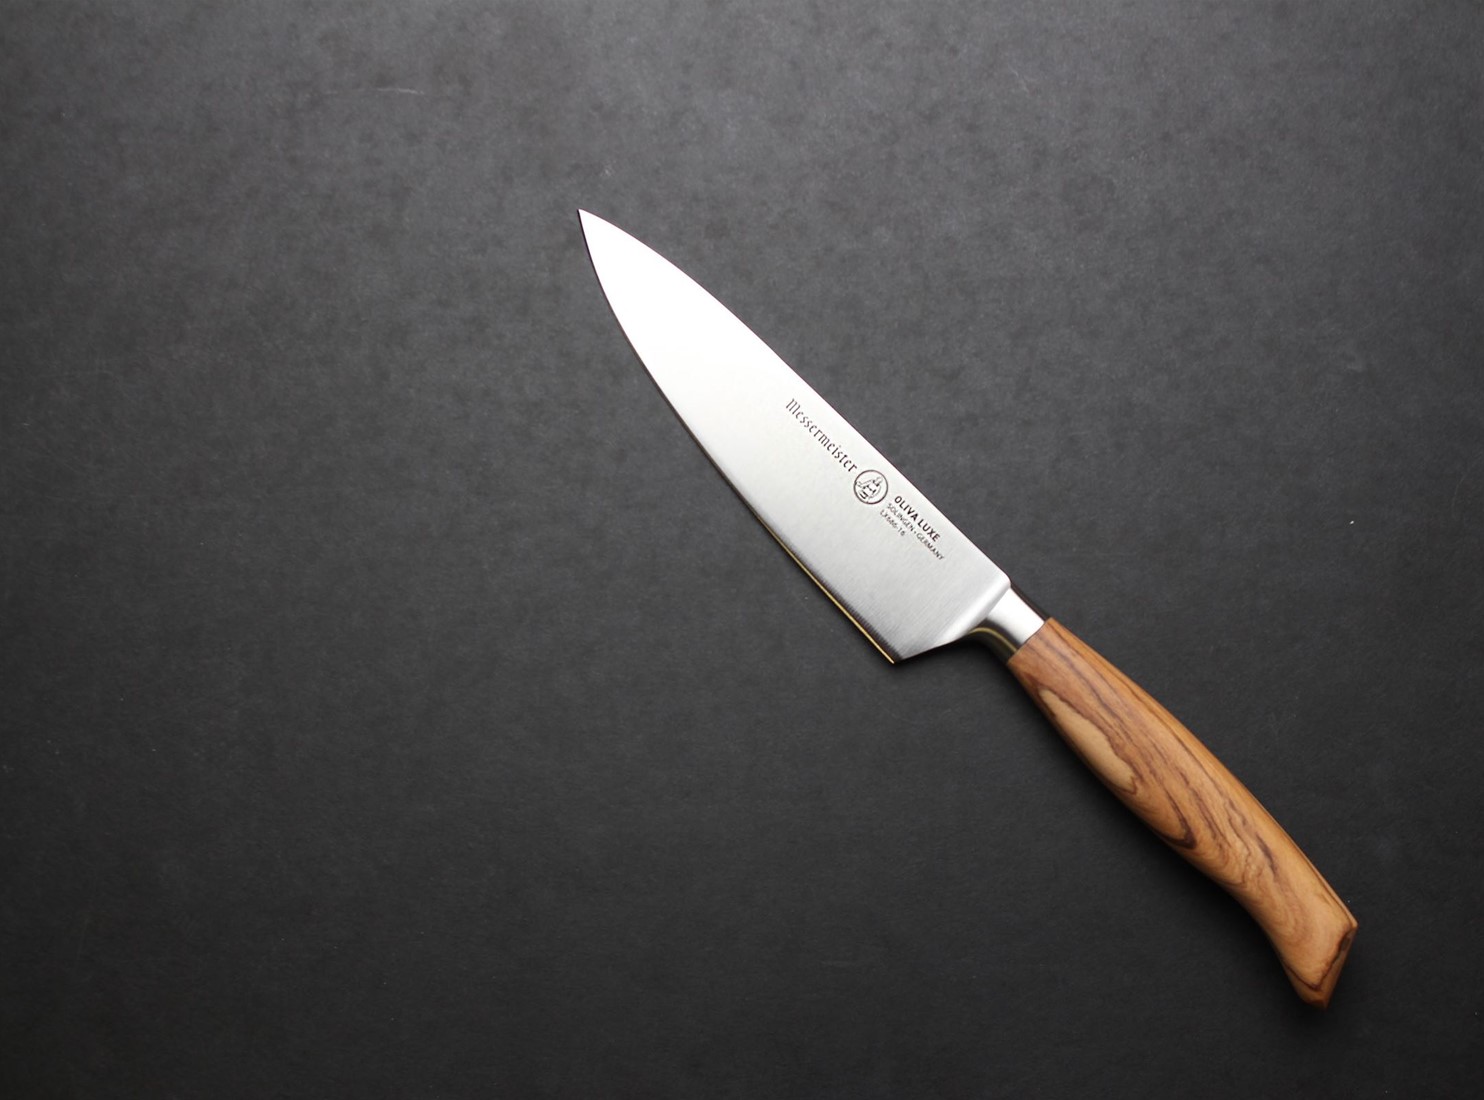 Messermeister Oliva Elite Olive Wood Handled Knives